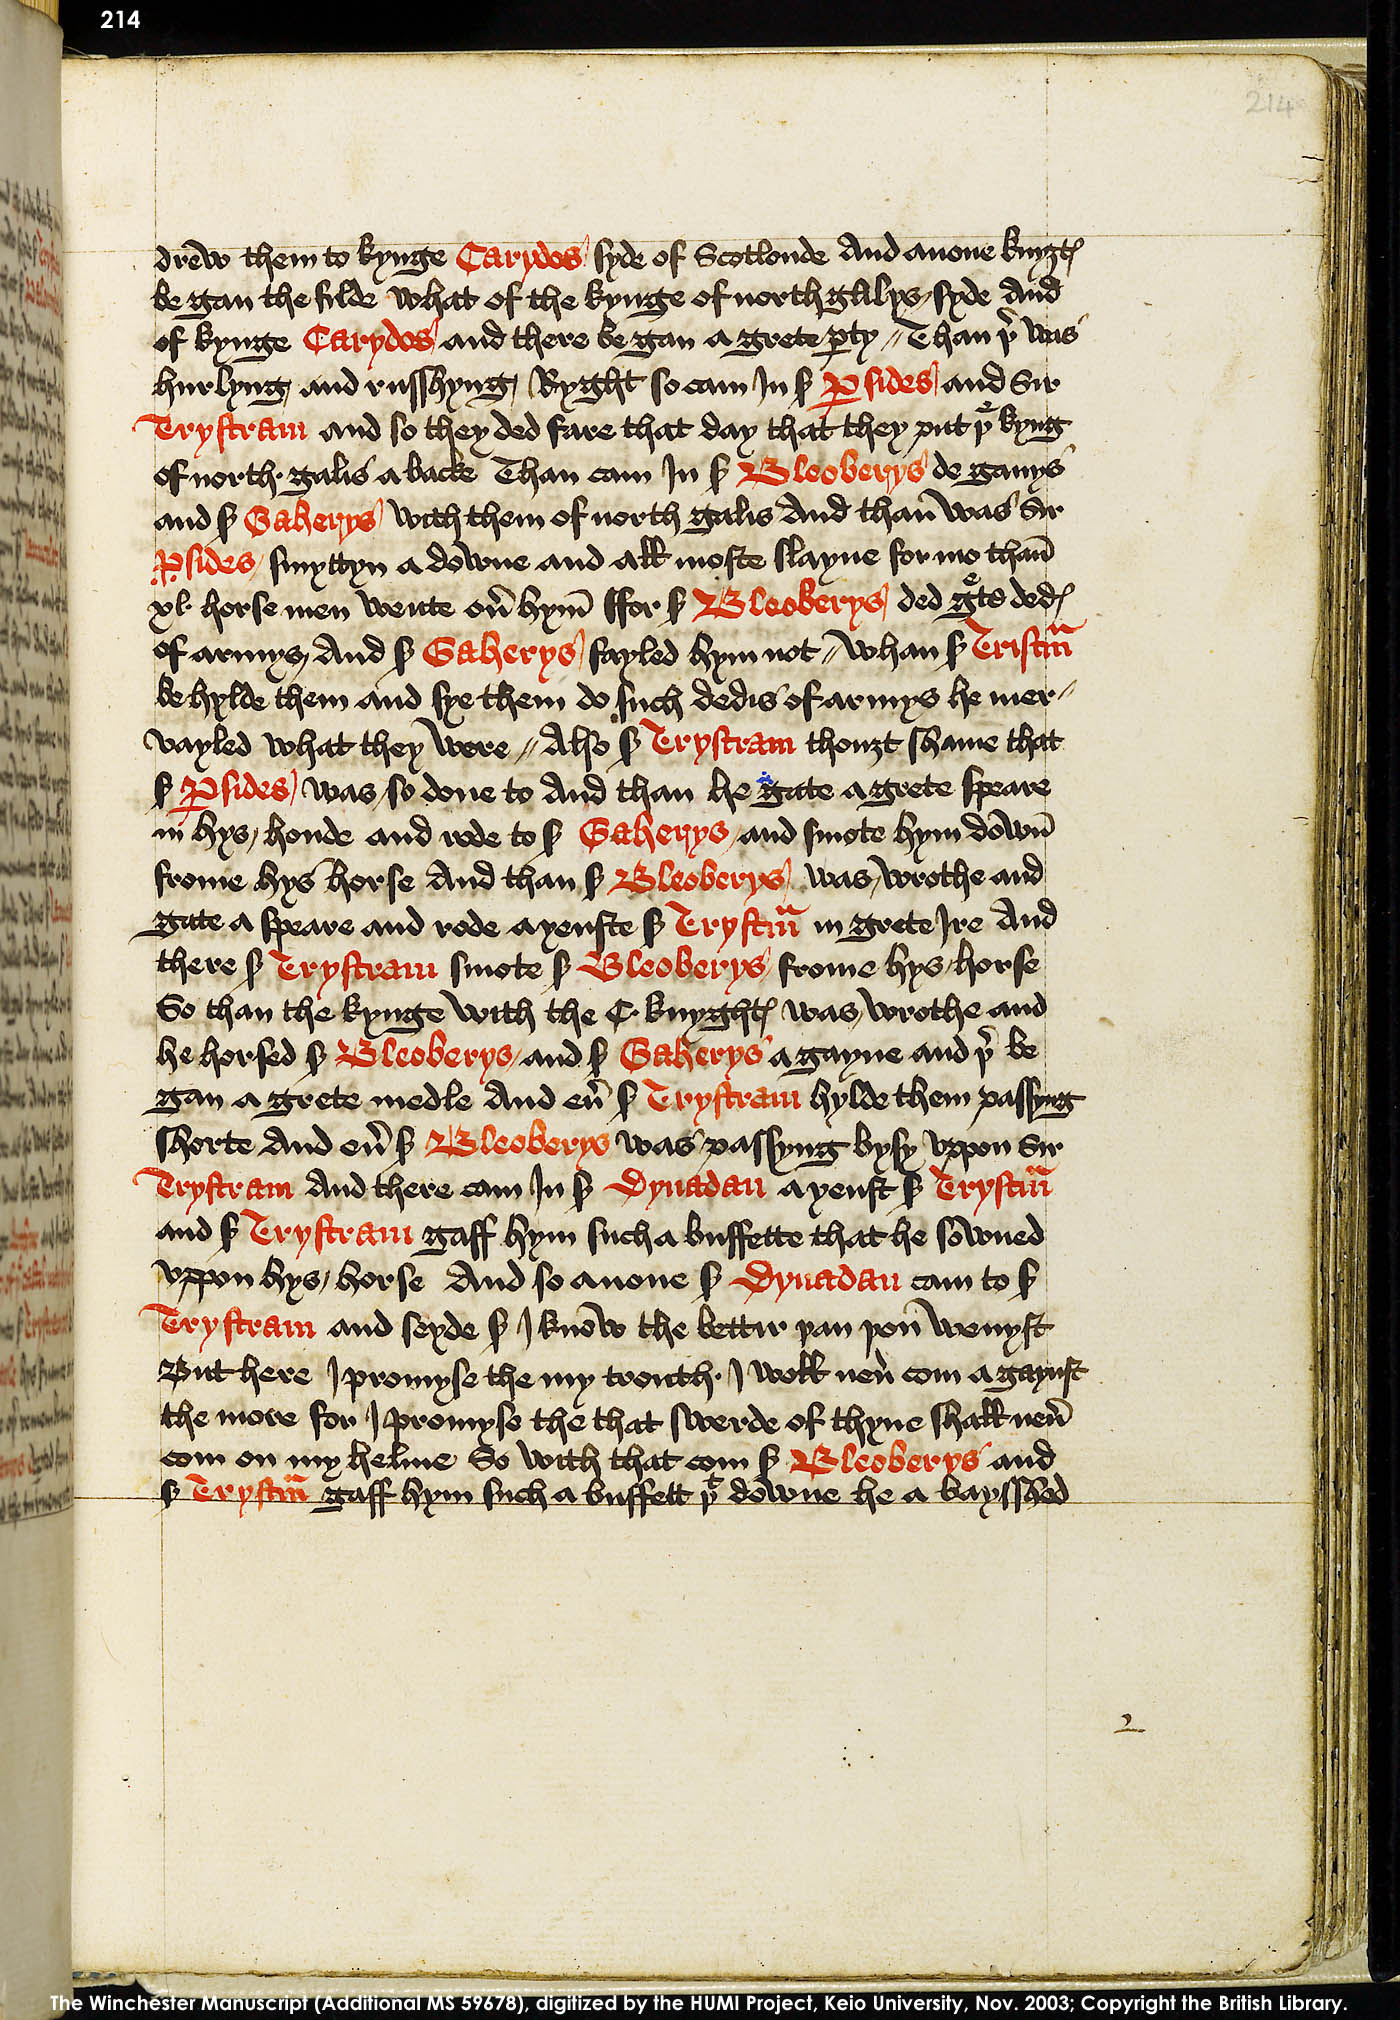 Folio 214r